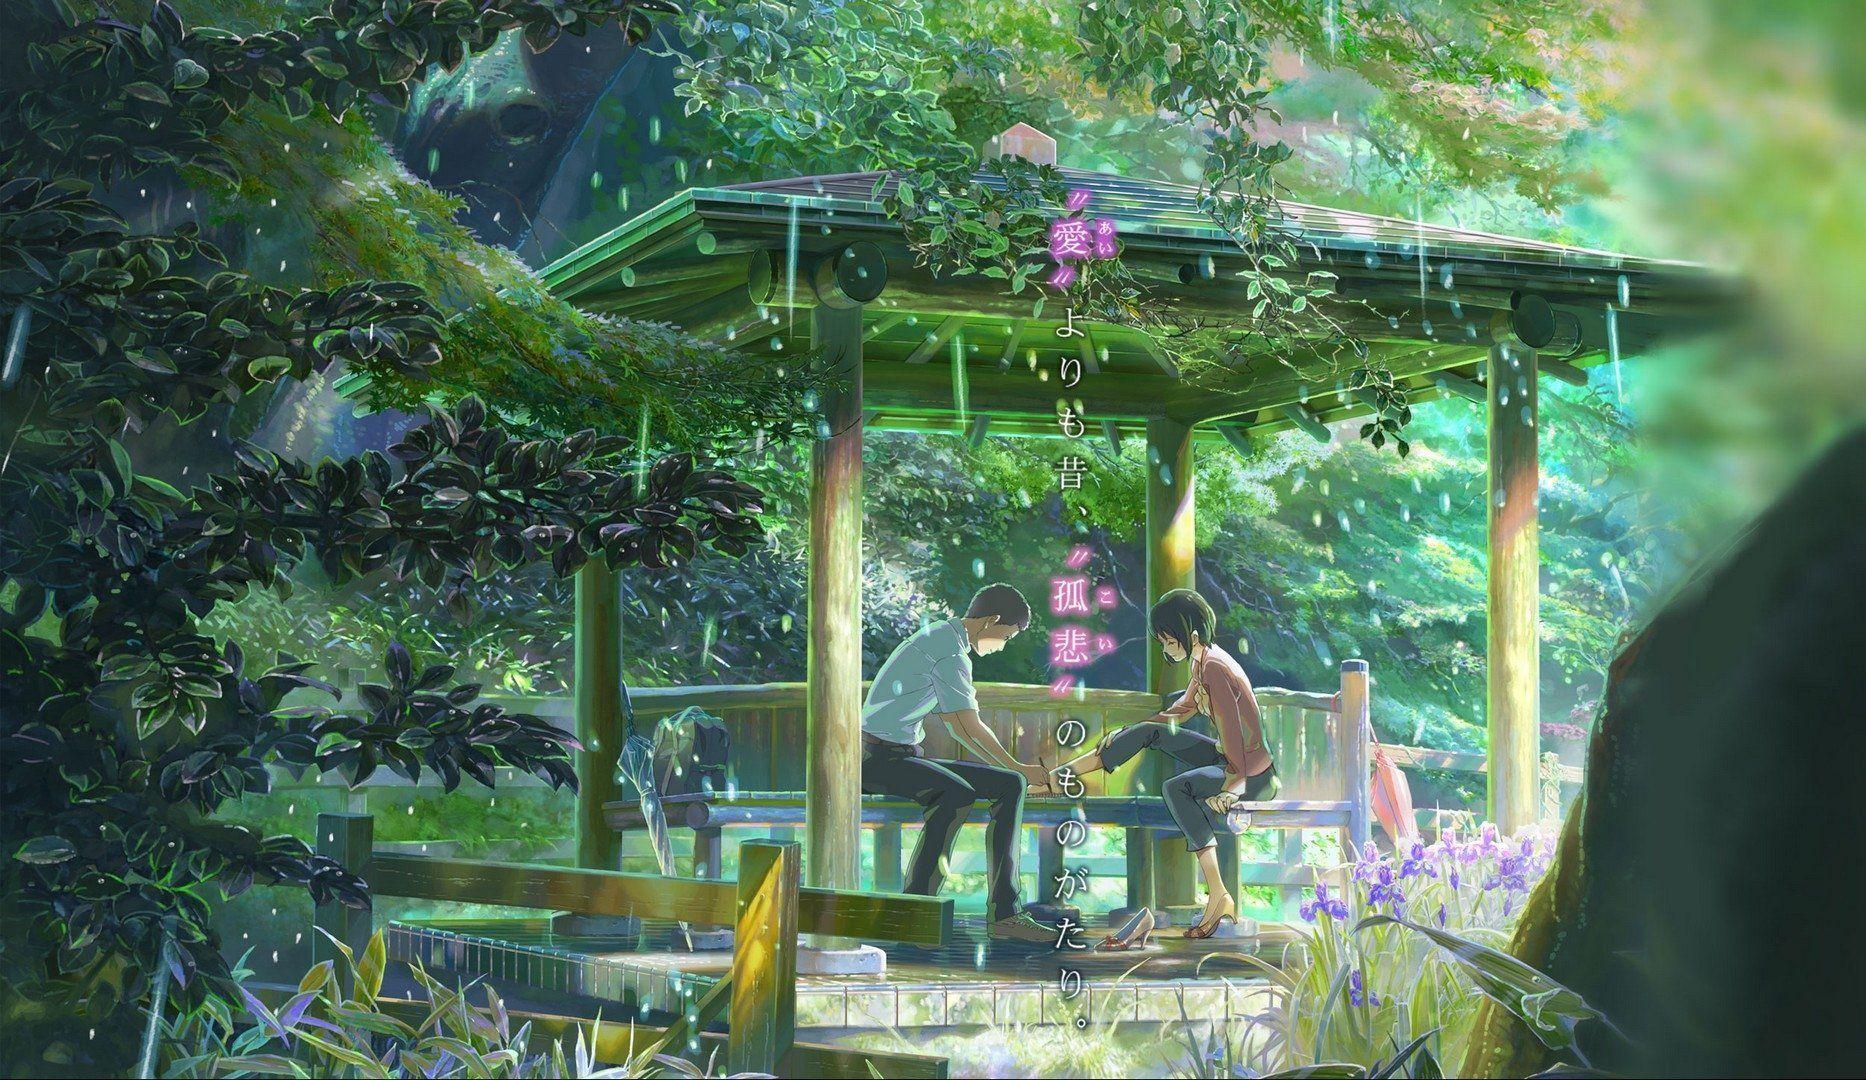 Hình nền anime vườn: Hình nền anime vườn sẽ là sự lựa chọn tuyệt vời để trang trí cho màn hình của bạn. Với thiết kế tinh tế, tông màu nhẹ nhàng và không gian rộng lớn, bức tranh này sẽ mang đến cho bạn một không gian sống động và đầy cảm hứng. Đừng bỏ lỡ điều này!